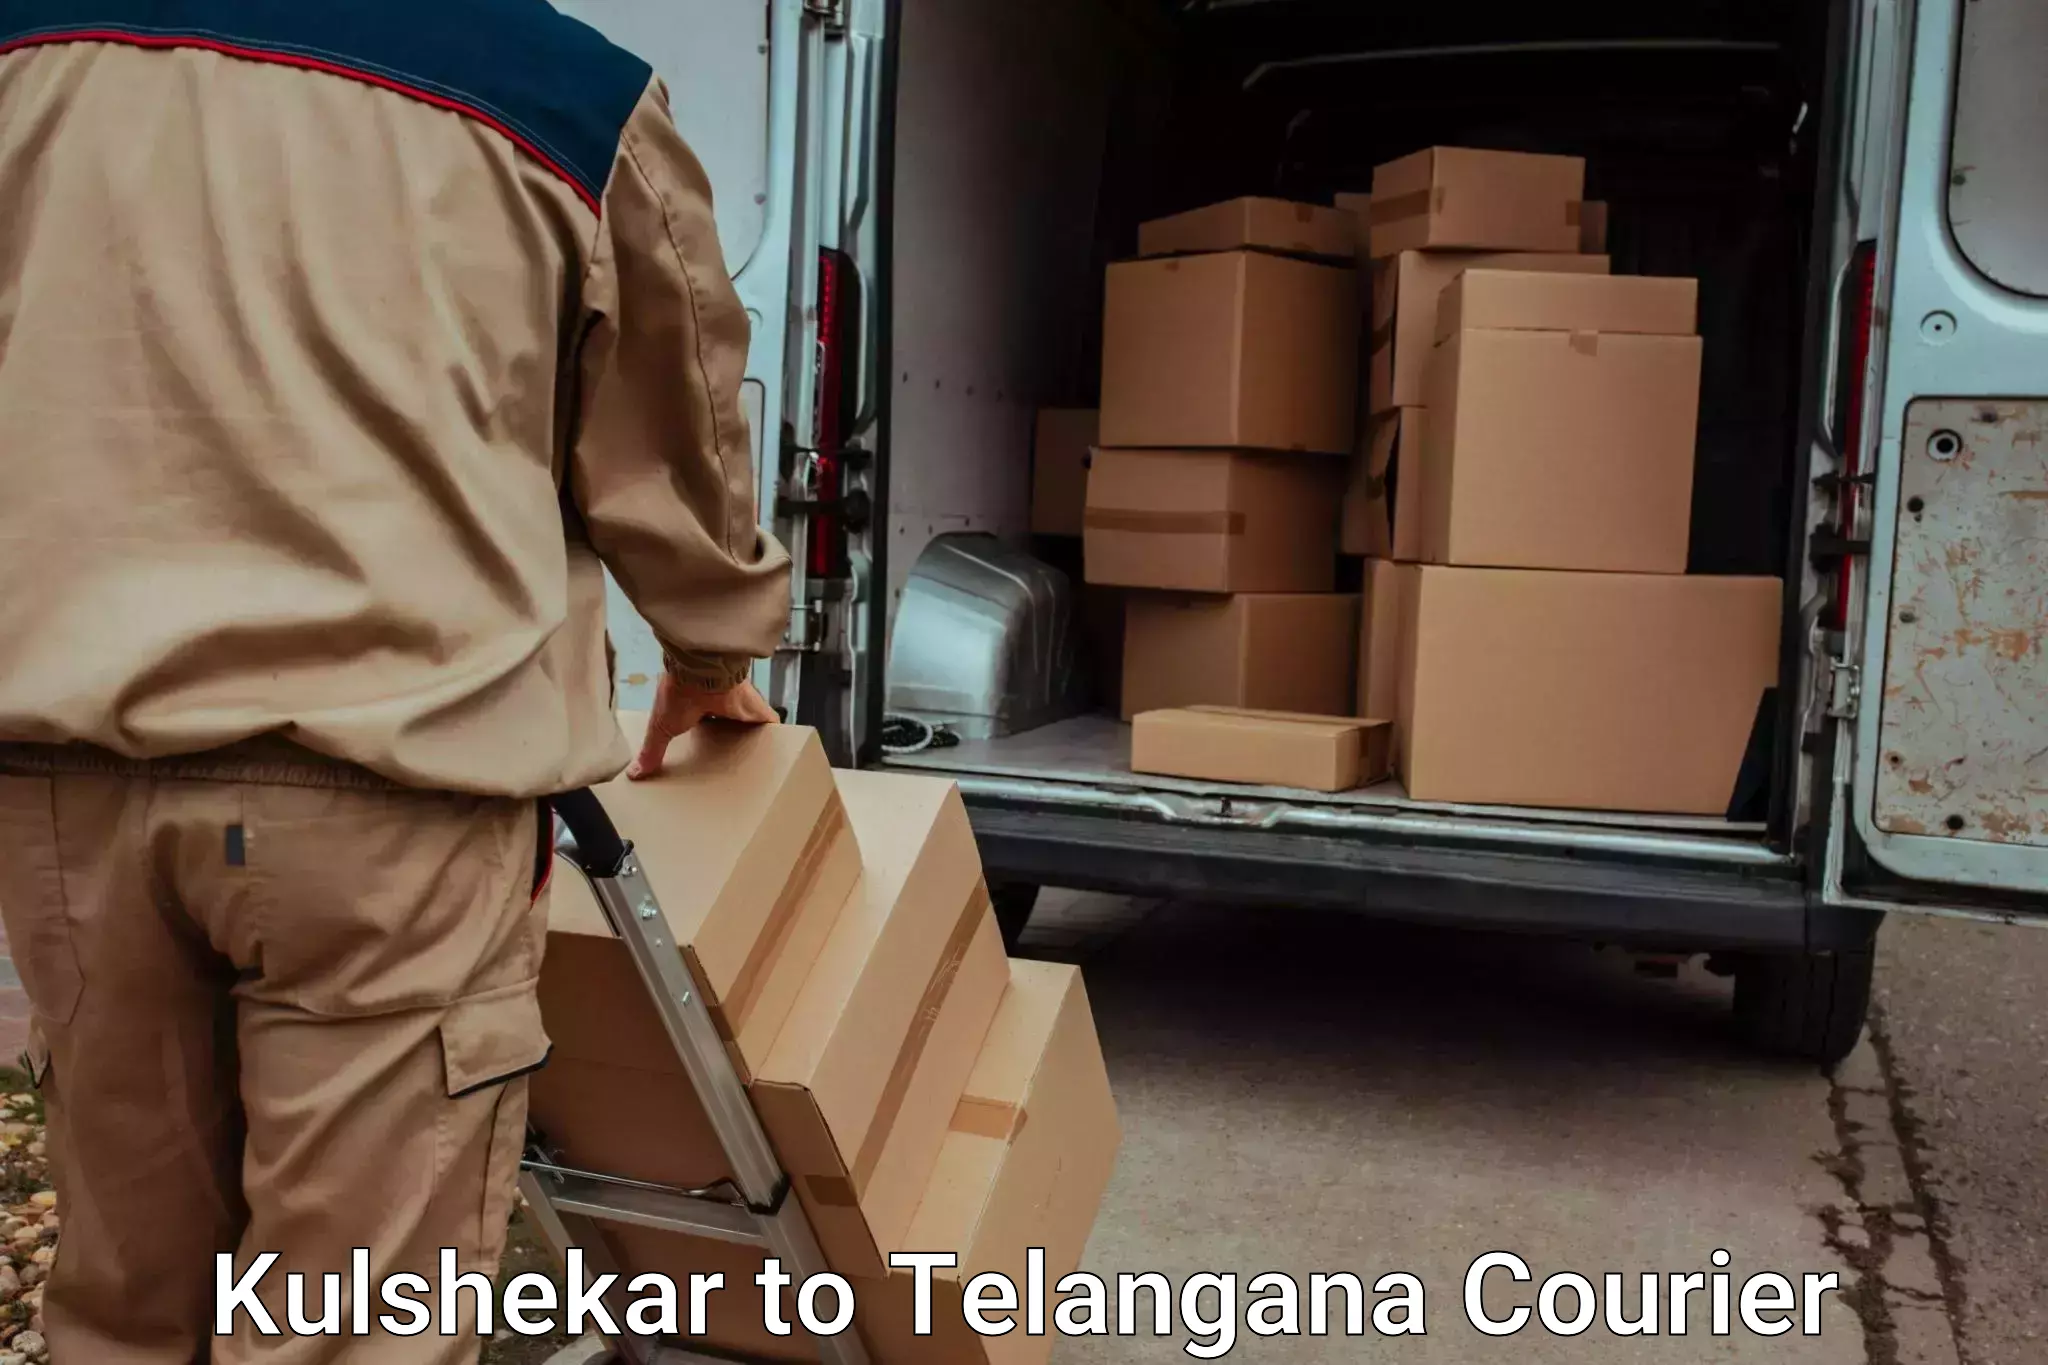 Customized luggage delivery Kulshekar to Haliya